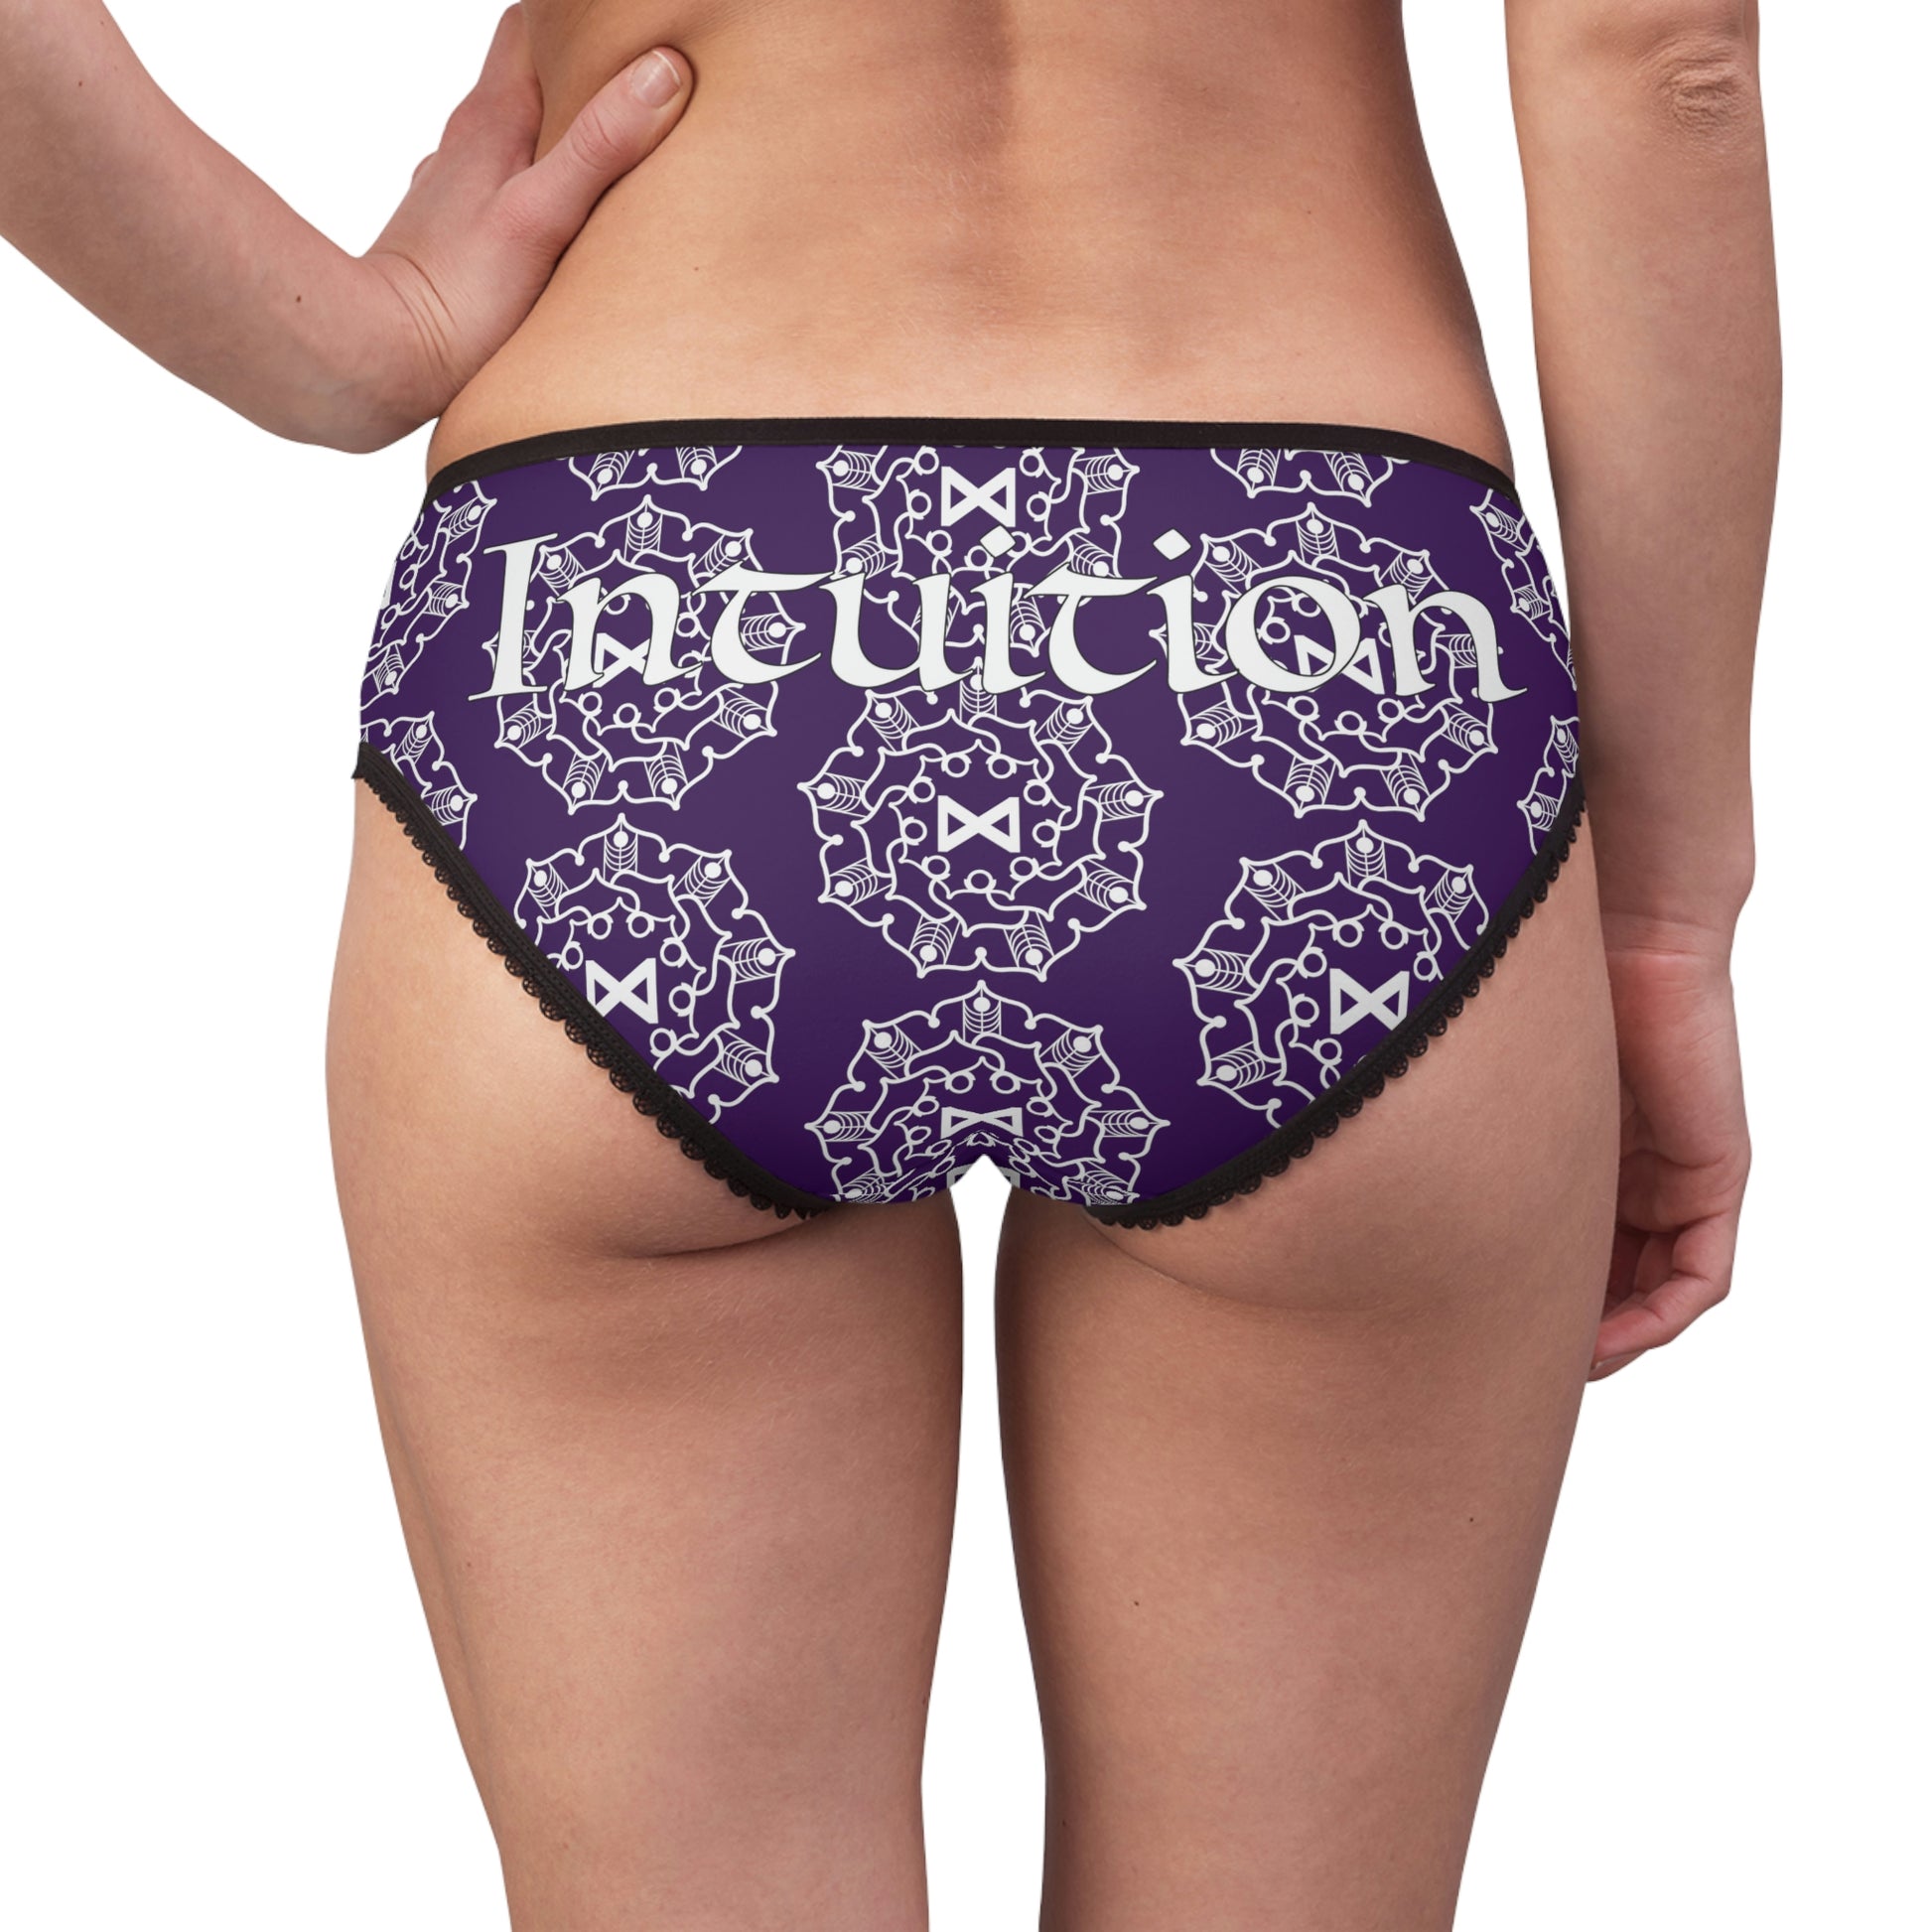 Patti's Power Panties Women's Bikini Brief Panty - Intuition